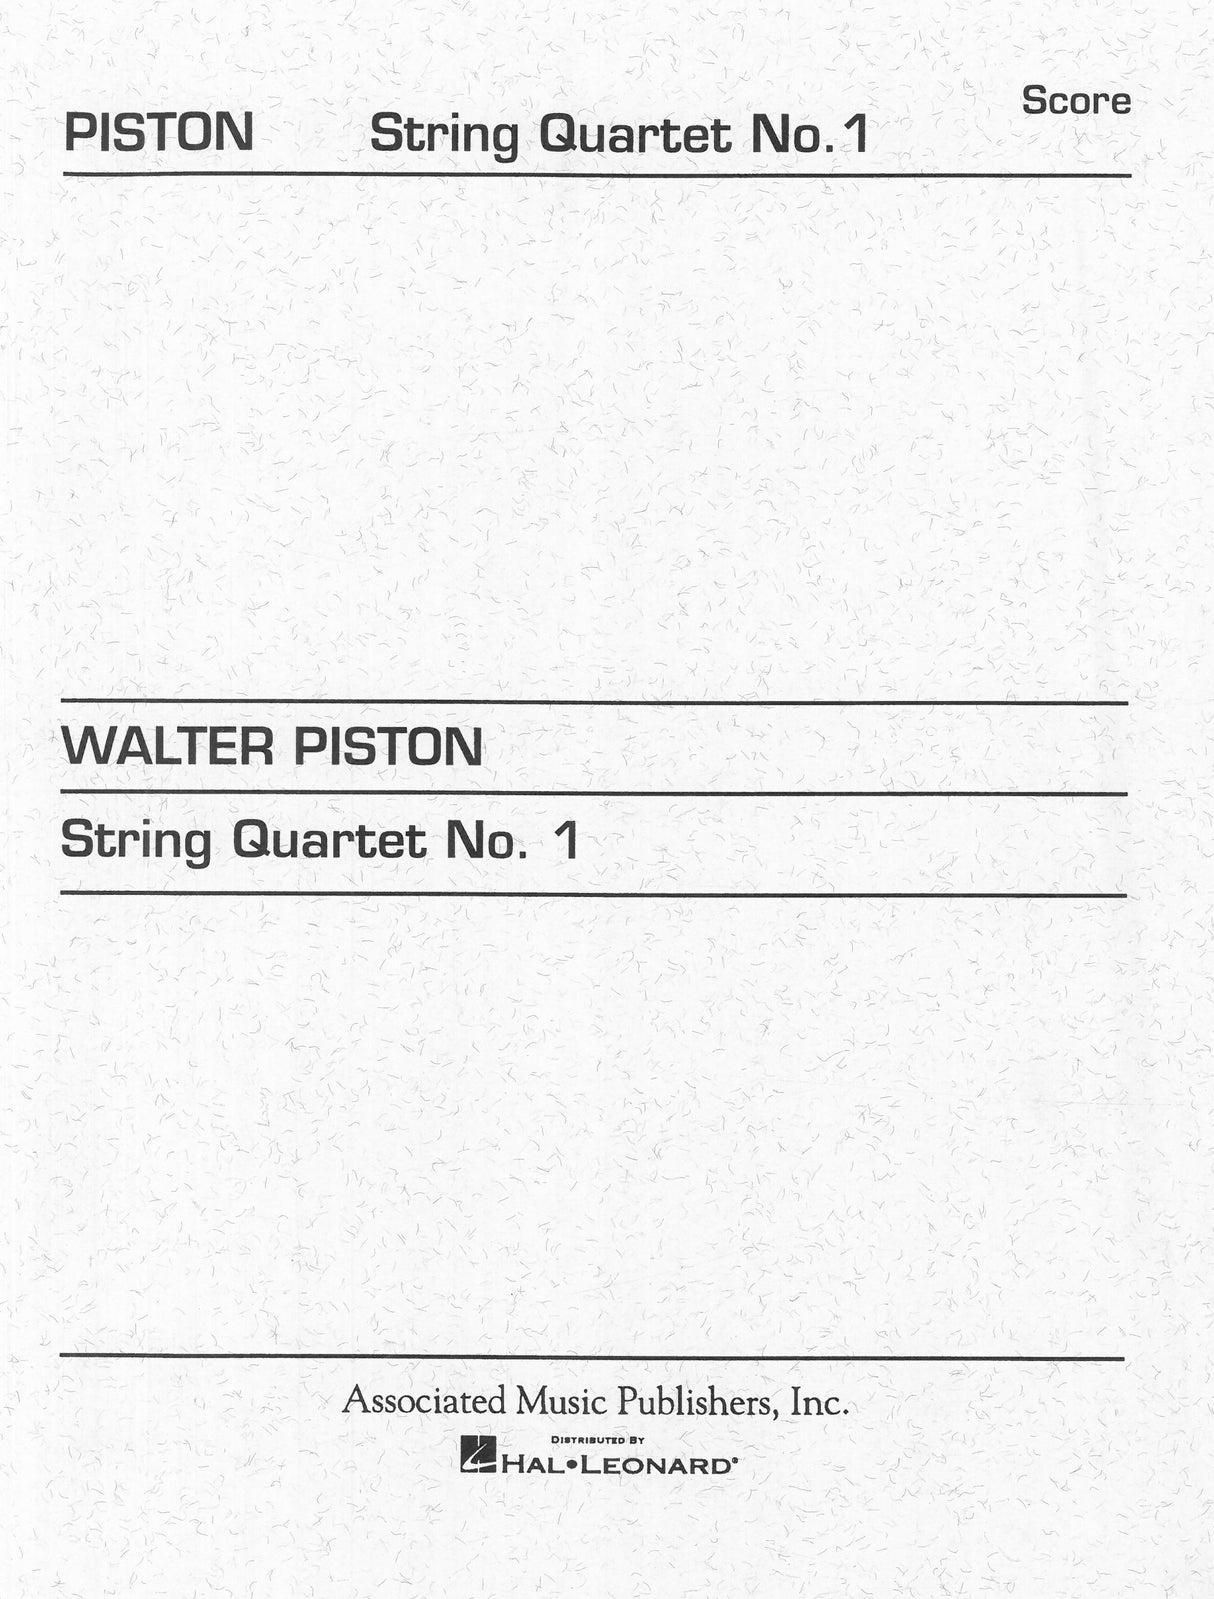 Piston: String Quartet No. 1